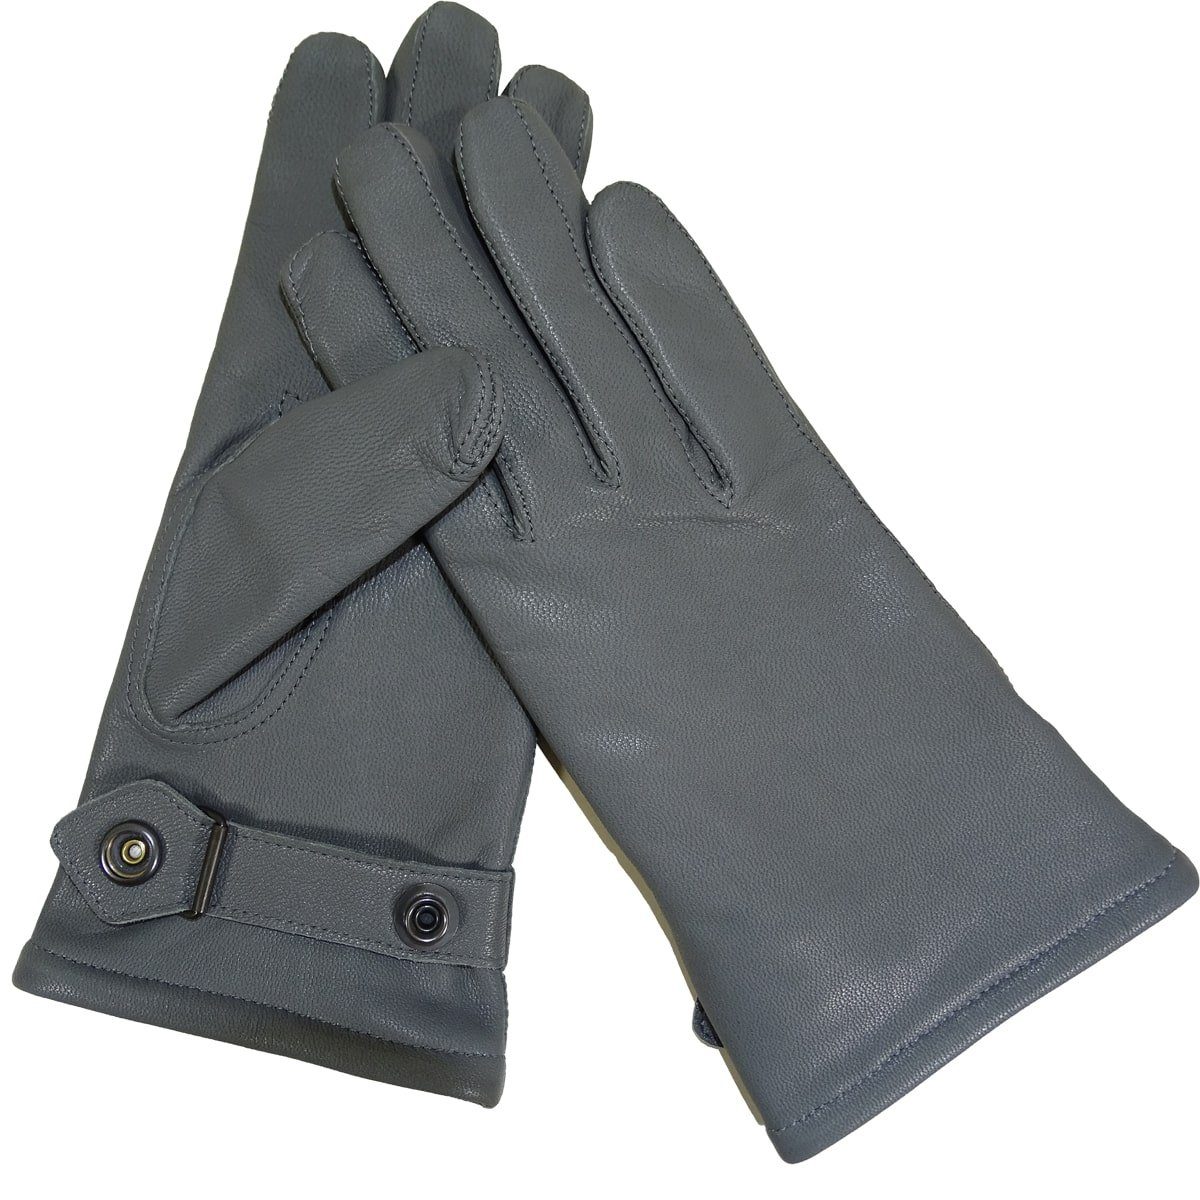 100% Qualität Modeka Lederhandschuhe Original Bundeswehr Lederhandschuhe *Neu* Gefüttert Grau Winter gefüttert